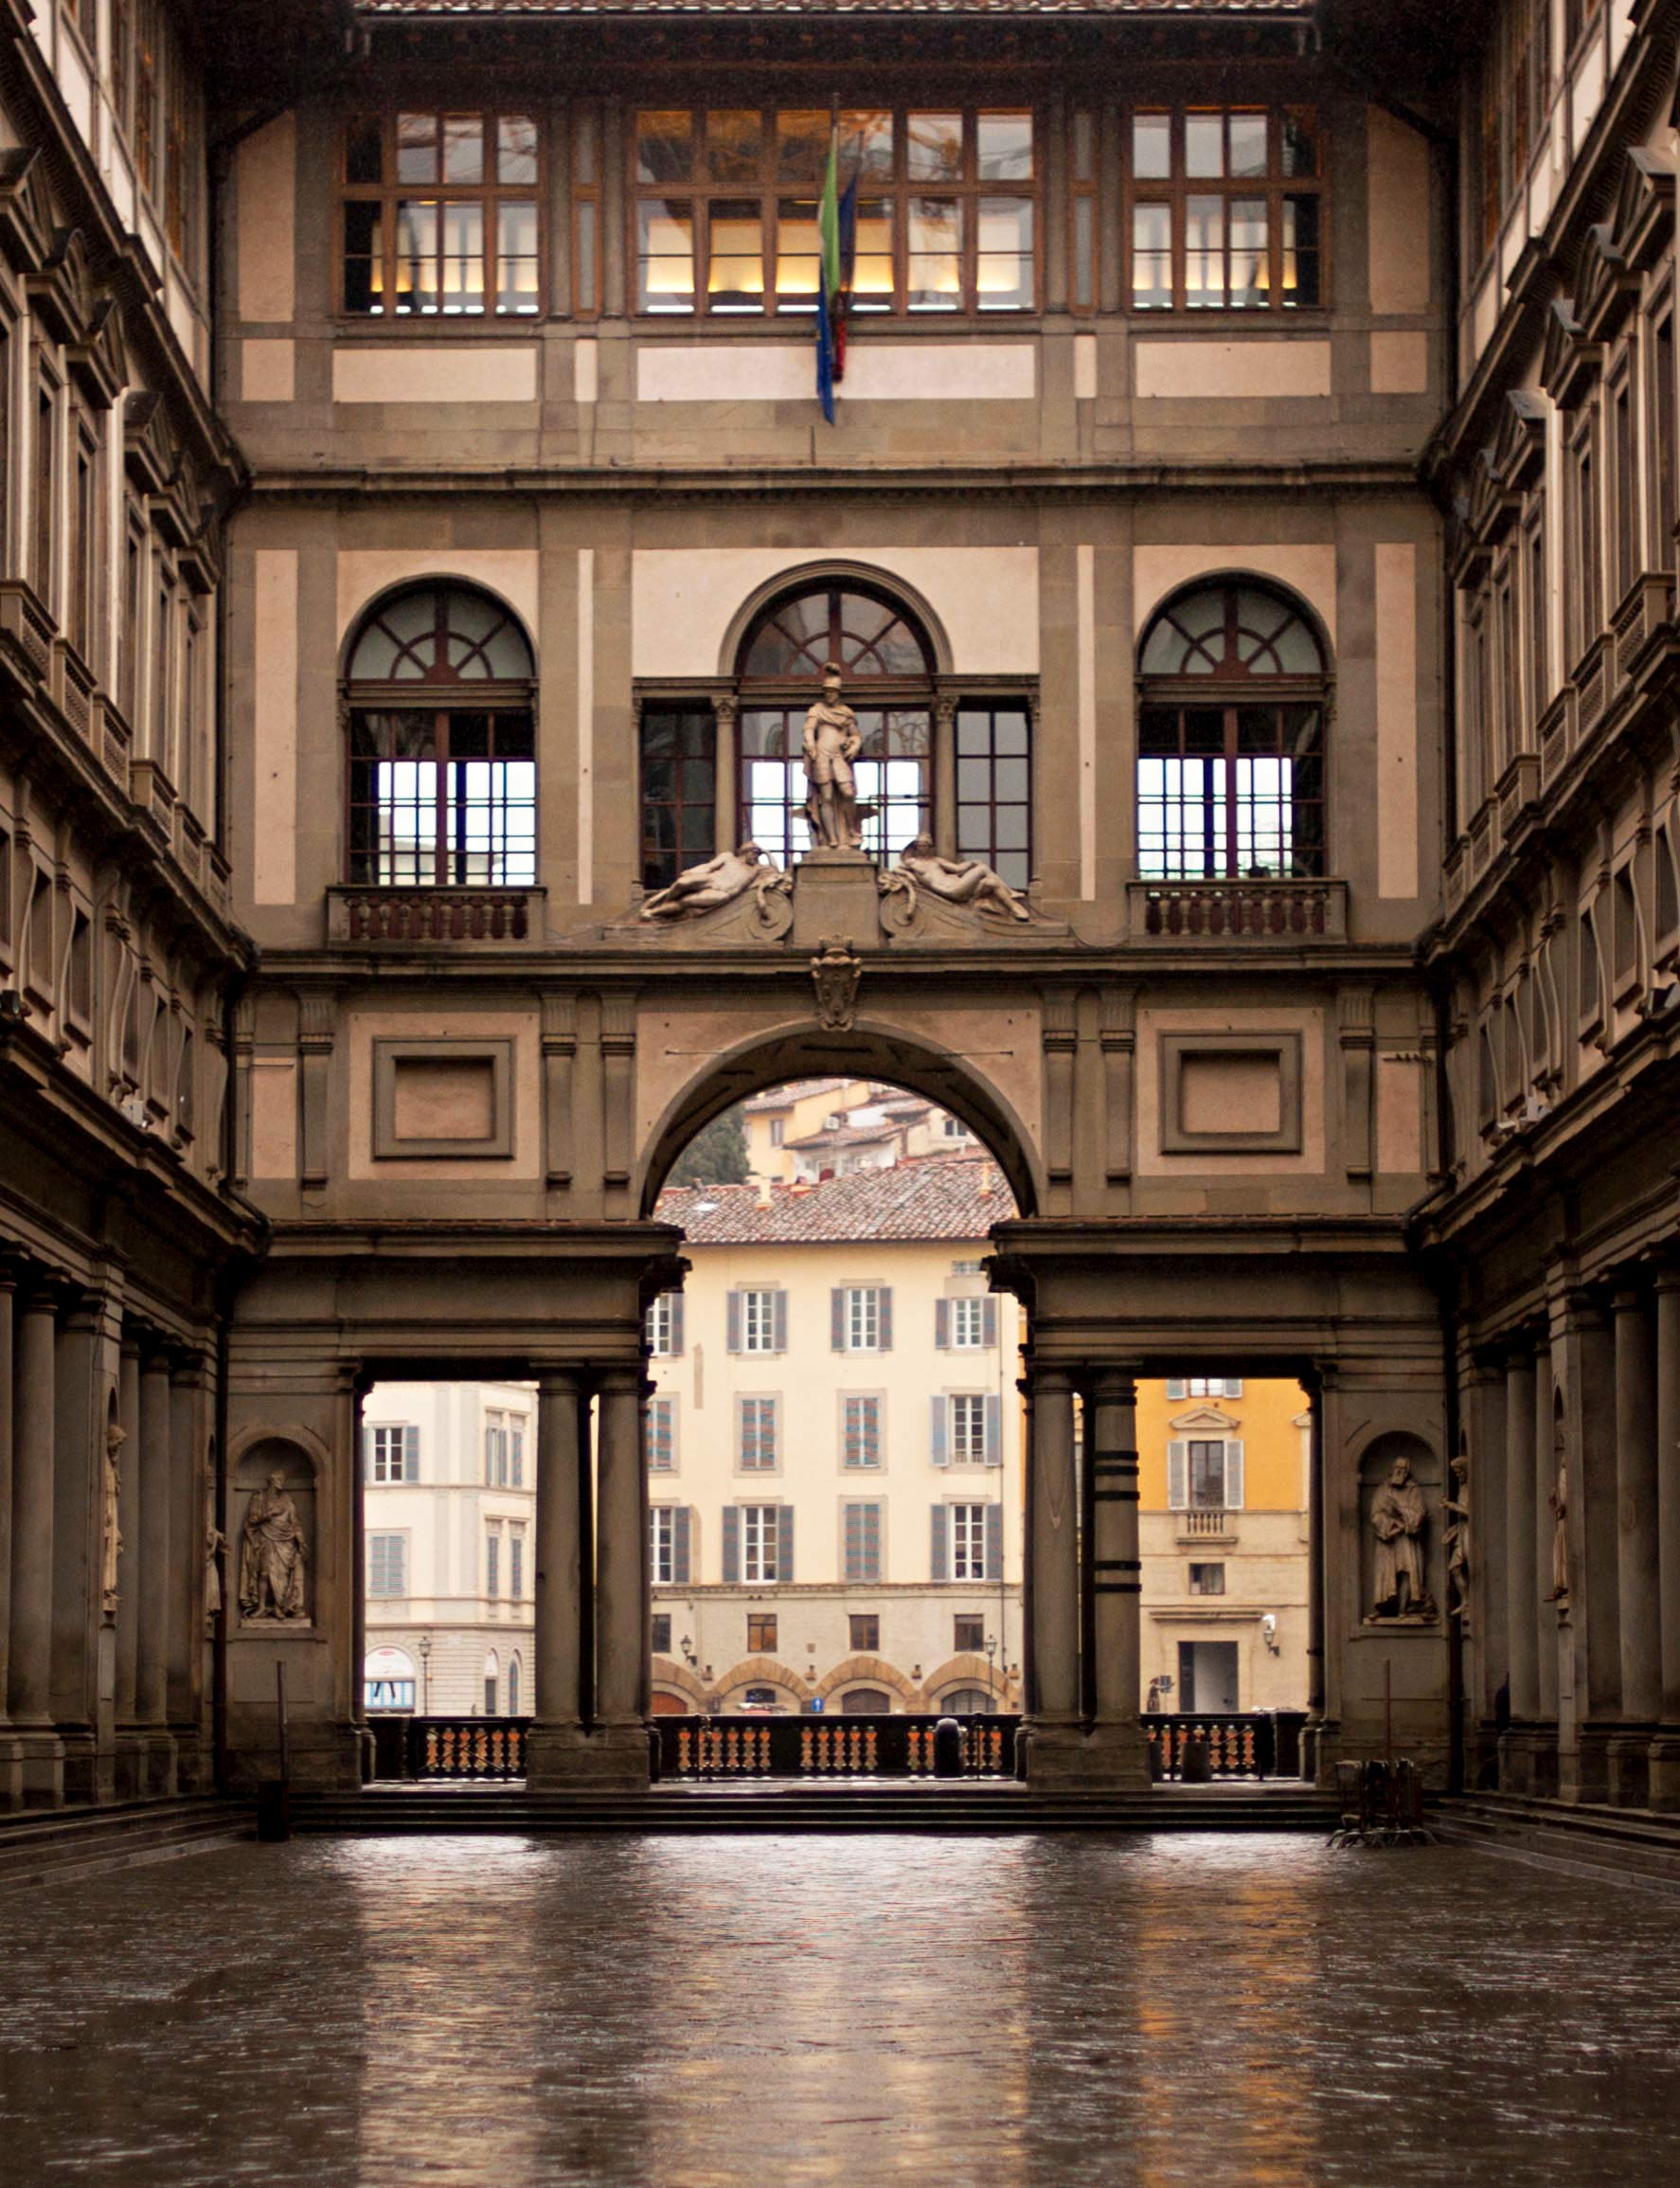 Galleria degli Uffizi - Florence, Italy